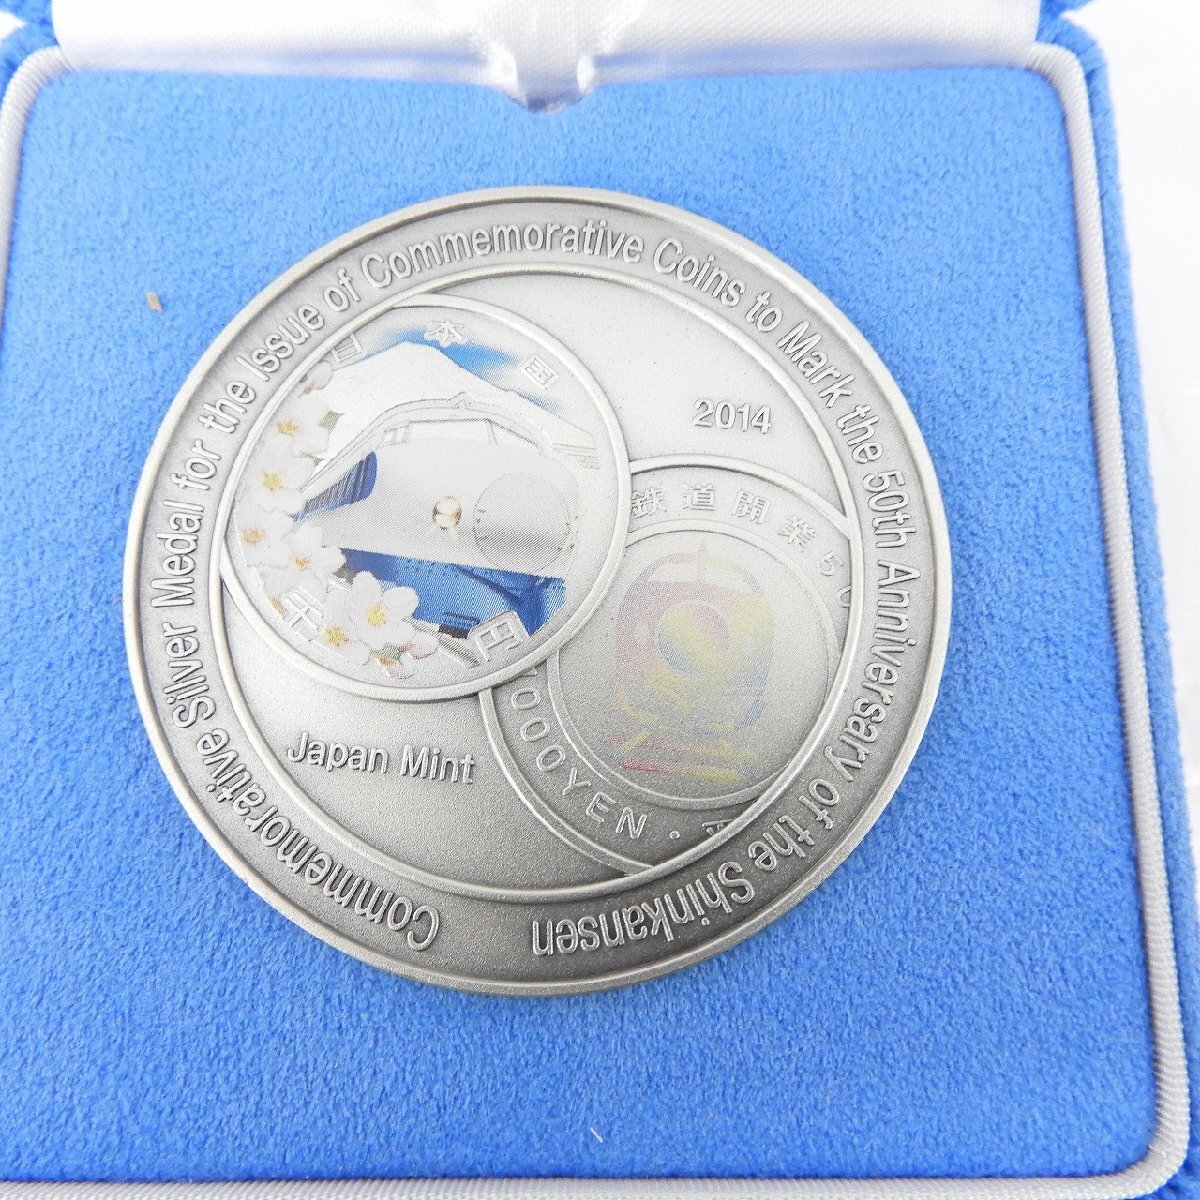 【記念メダル】新幹線鉄道開業50周年記念貨幣発行記念メダル 165.4g 箱付 807117328 0413の画像3